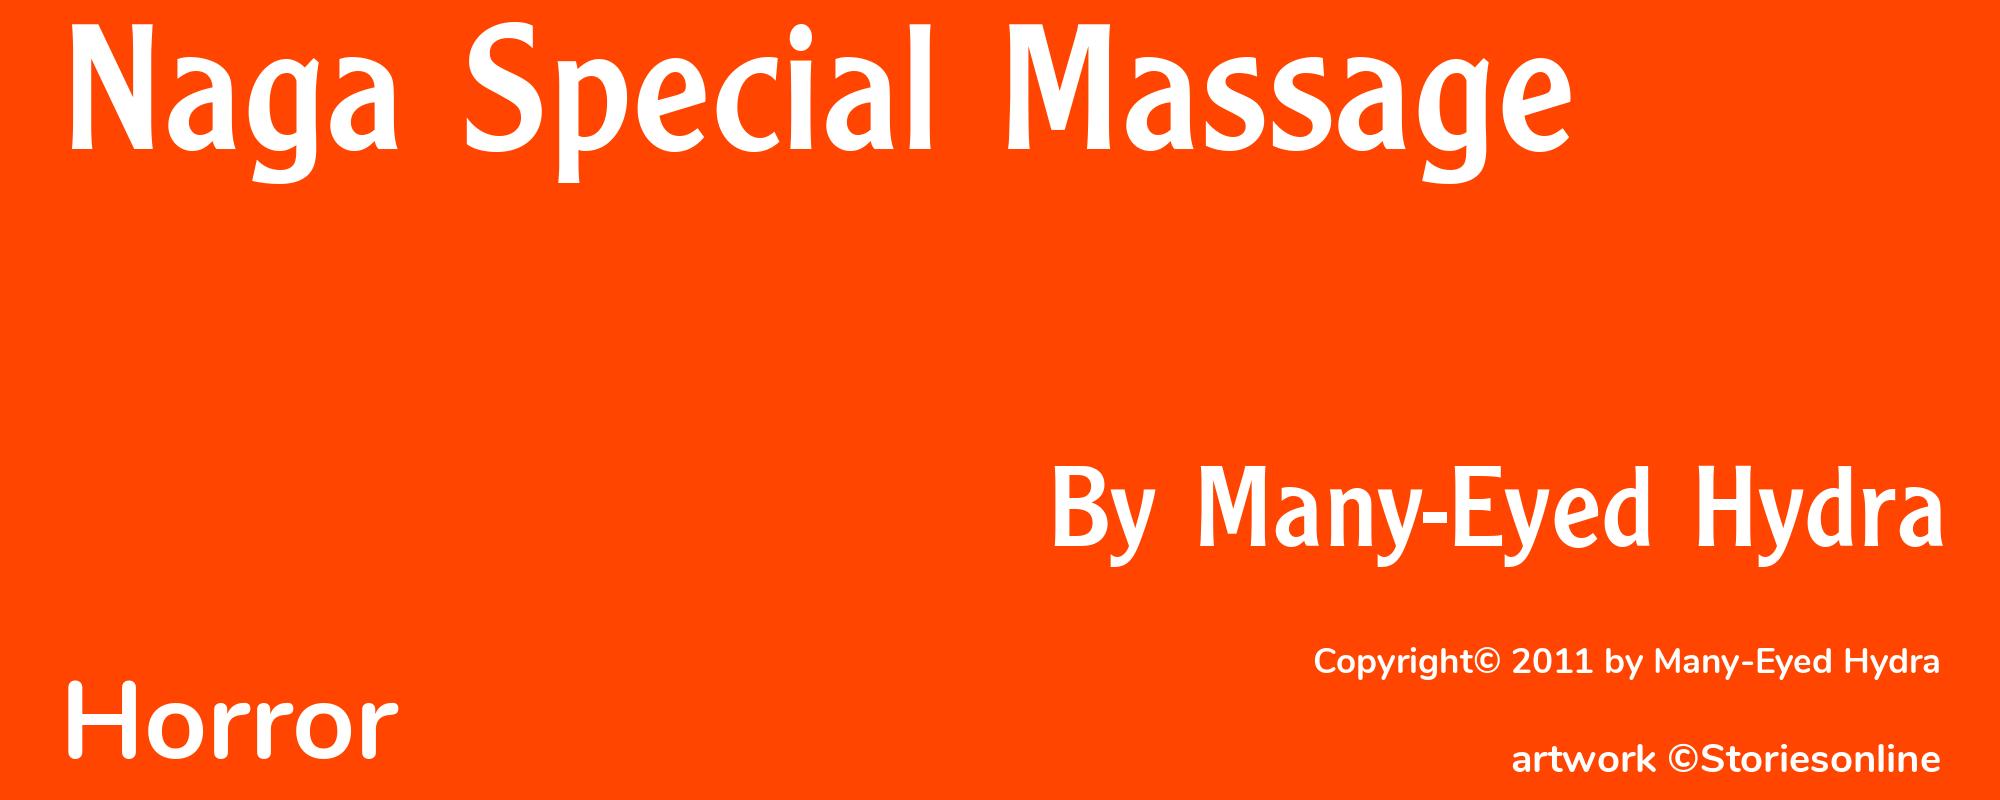 Naga Special Massage - Cover